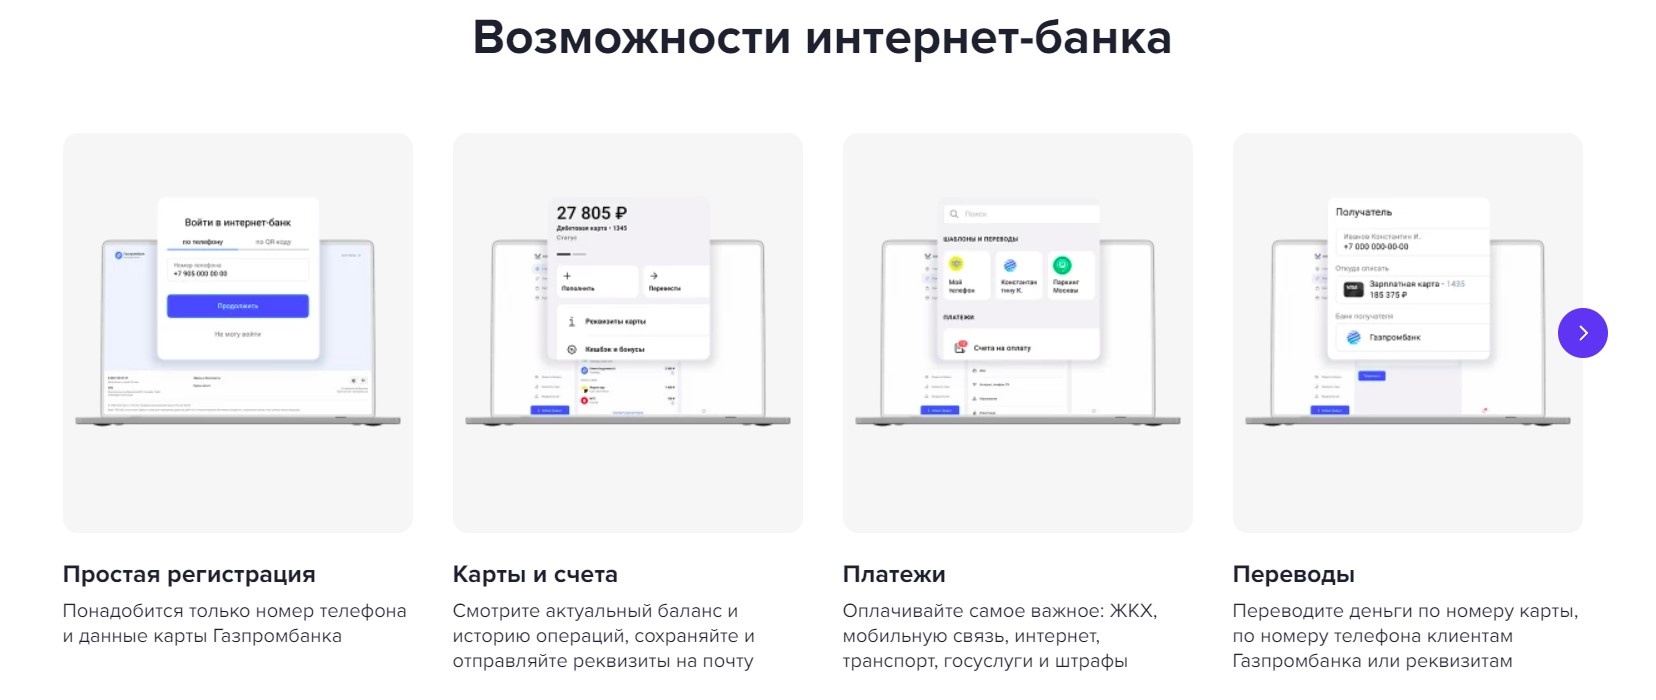 Интернет-банк Газпромбанка